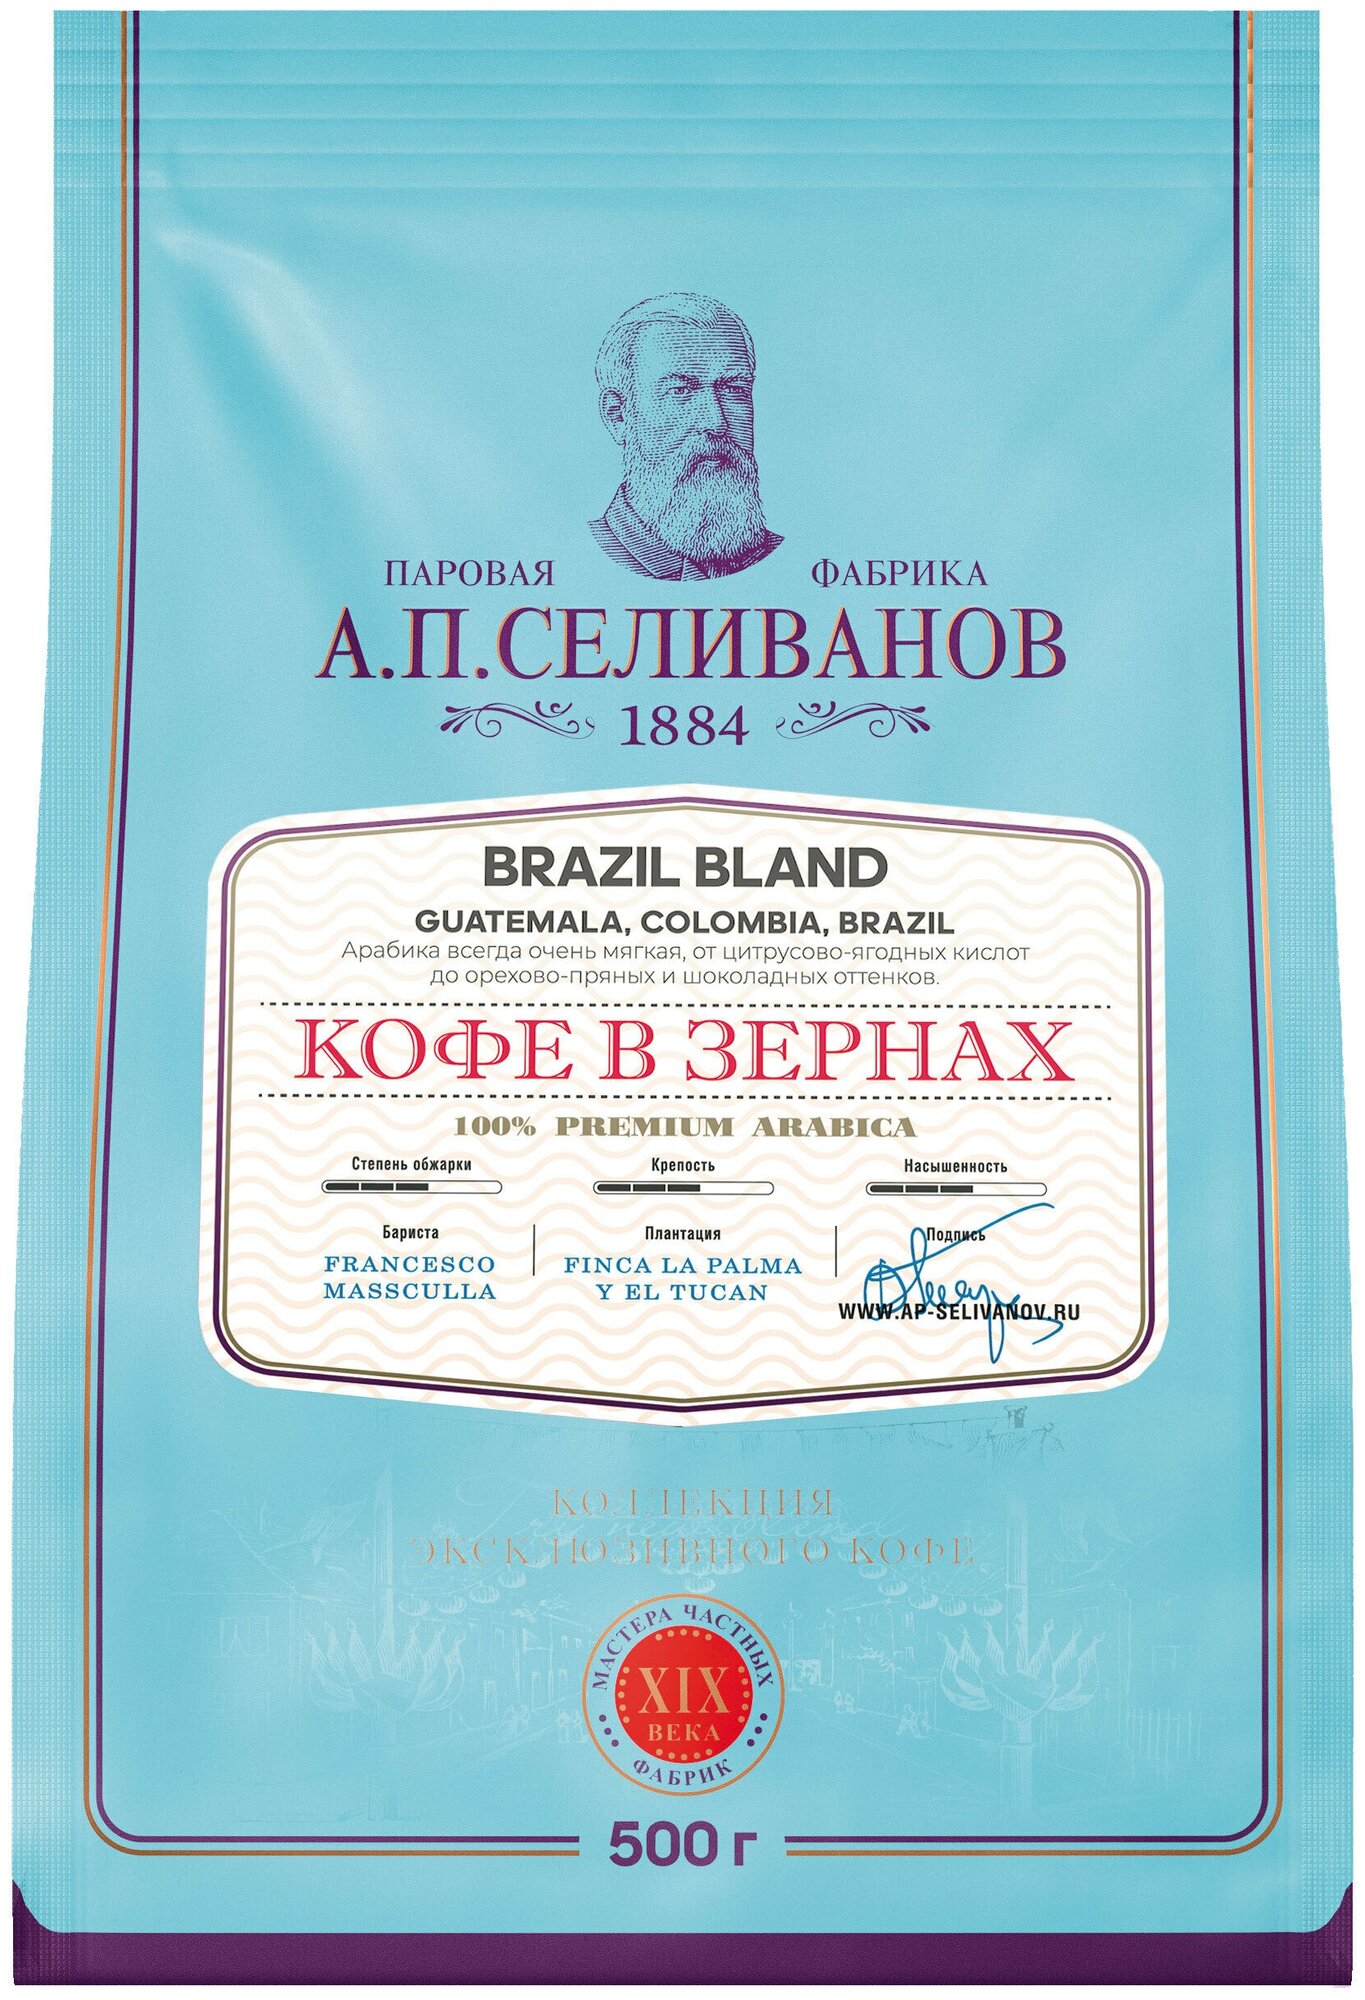 Кофе в зернах А. П. Селиванов Brazil Bland 100% арабика 500 гр